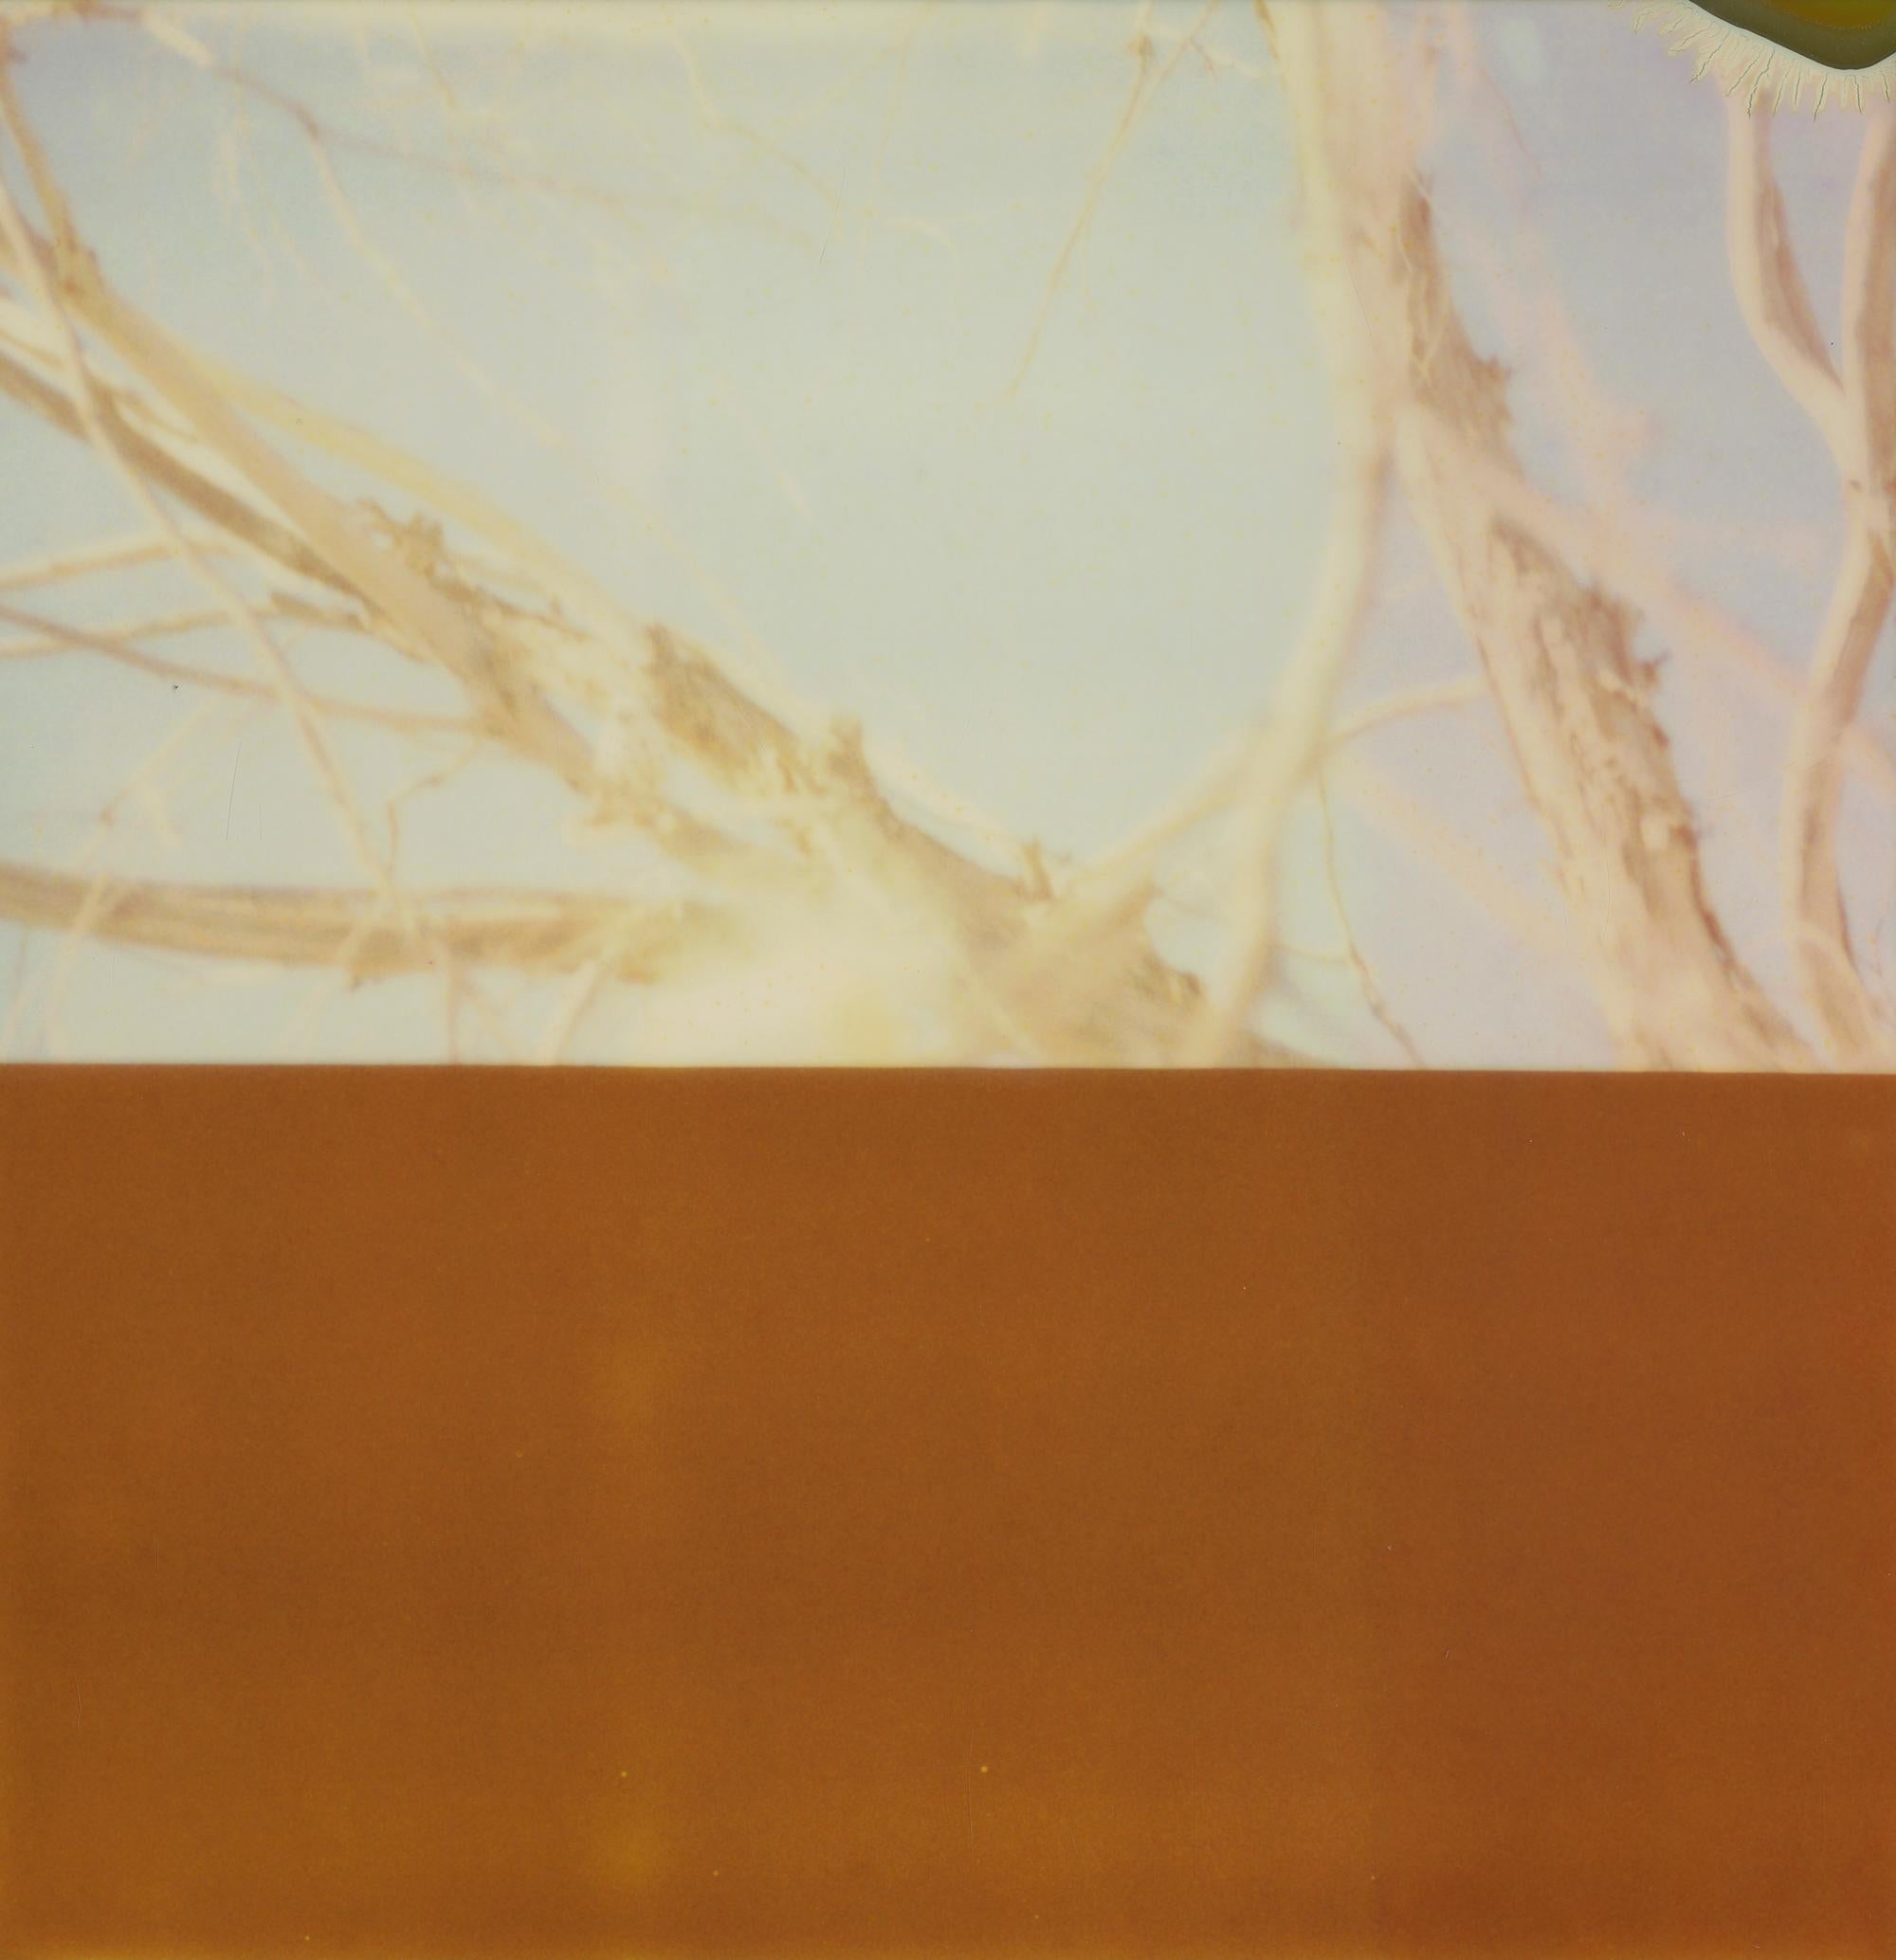 Stefanie Schneider Landscape Photograph - Summer Interlude II (Deconstructivism) - Contemporary, Expired Polaroid